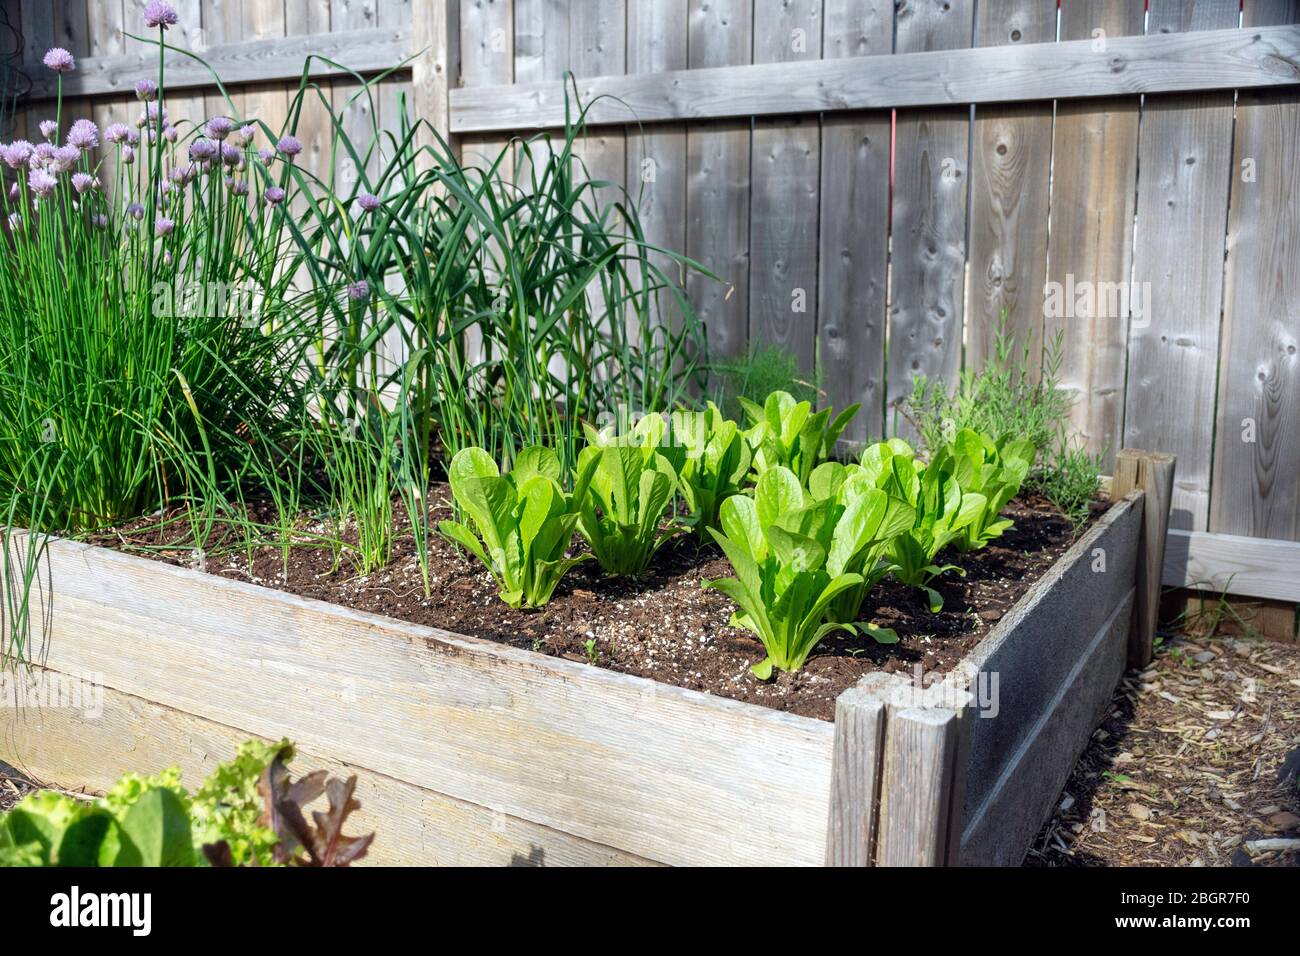 Parte della crescita della vostra propria tendenza alimentare, questo giardino di verdure cortile posteriore contiene grandi letti sopraelevati per la coltivazione di verdure ed erbe durante l'estate Foto Stock